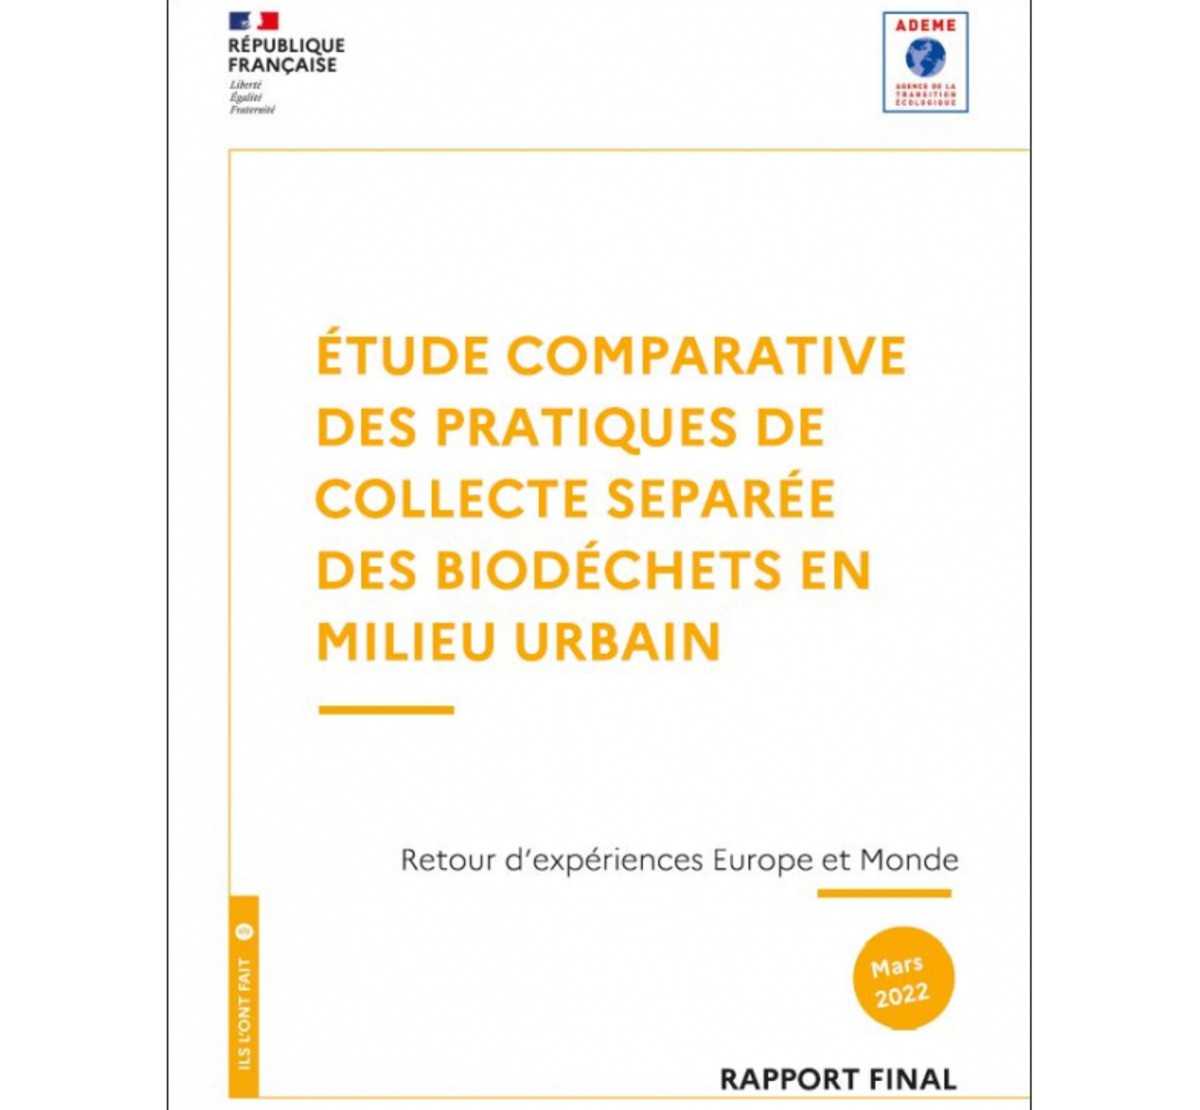 [ADEME] Etude des pratiques de collecte séparée des biodéchets en milieu urbain